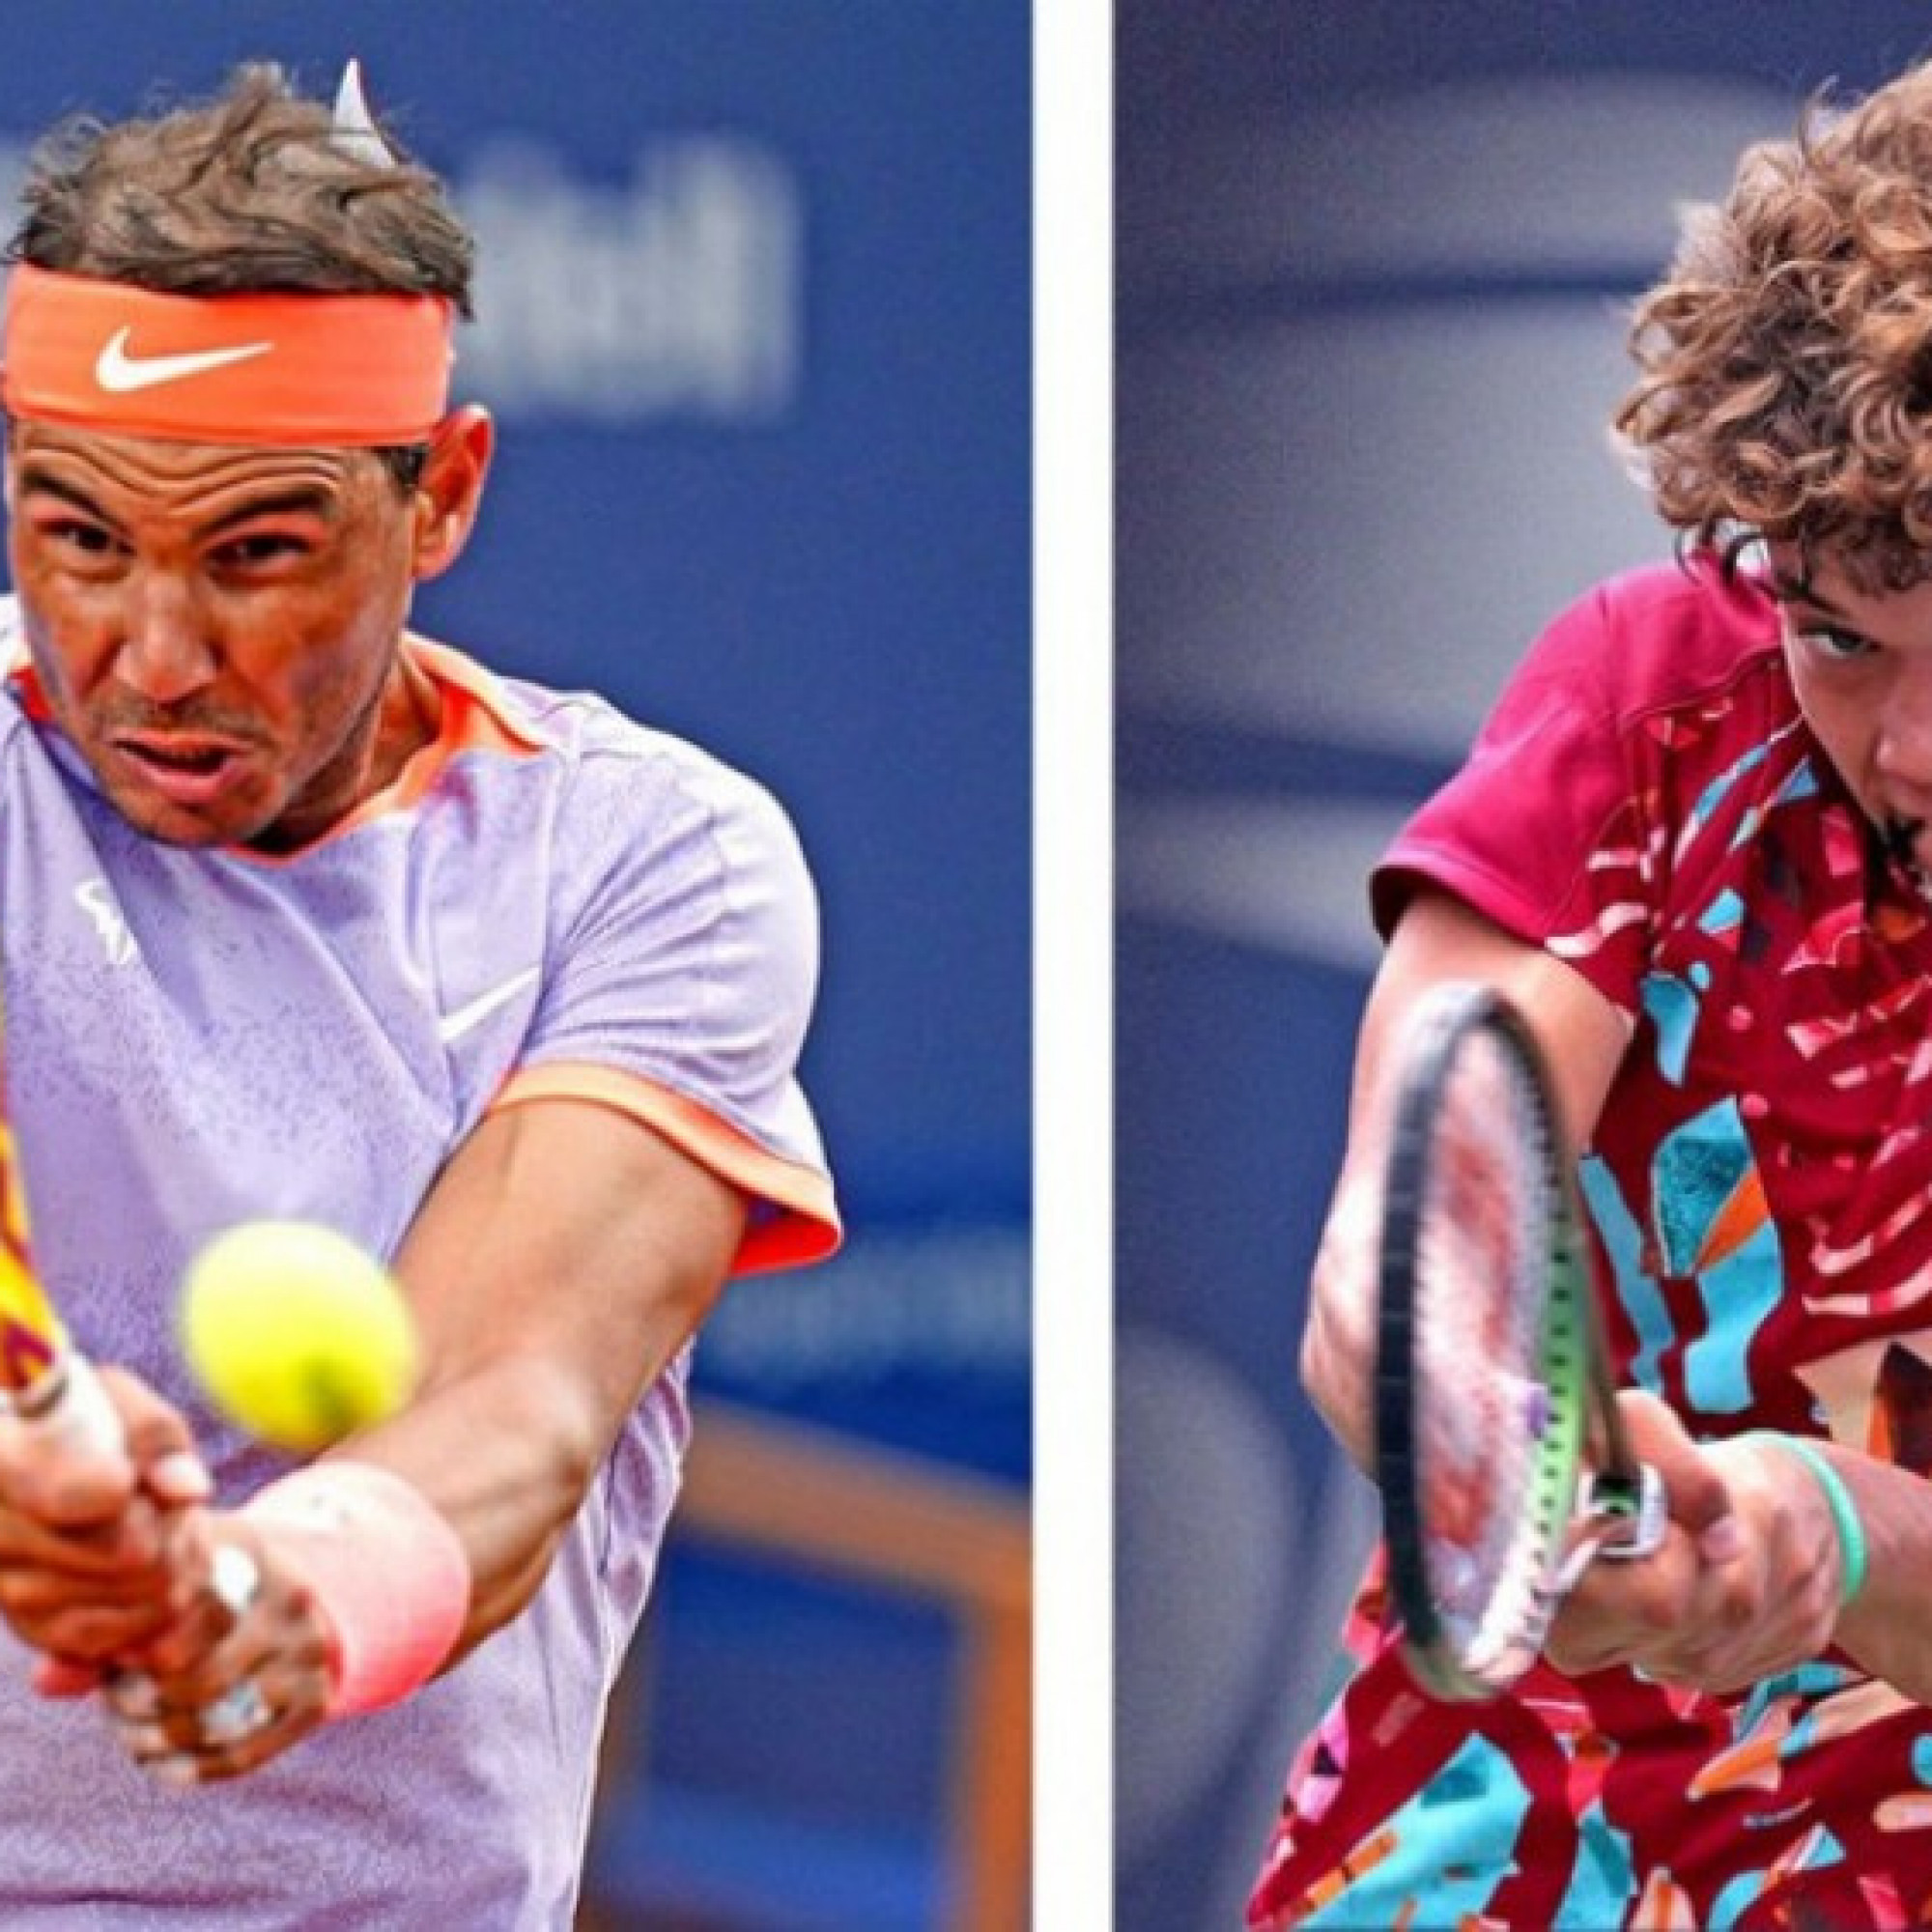  - Trực tiếp tennis Nadal - Blanch: Nadal lại thần tốc giành break (Madrid Open)